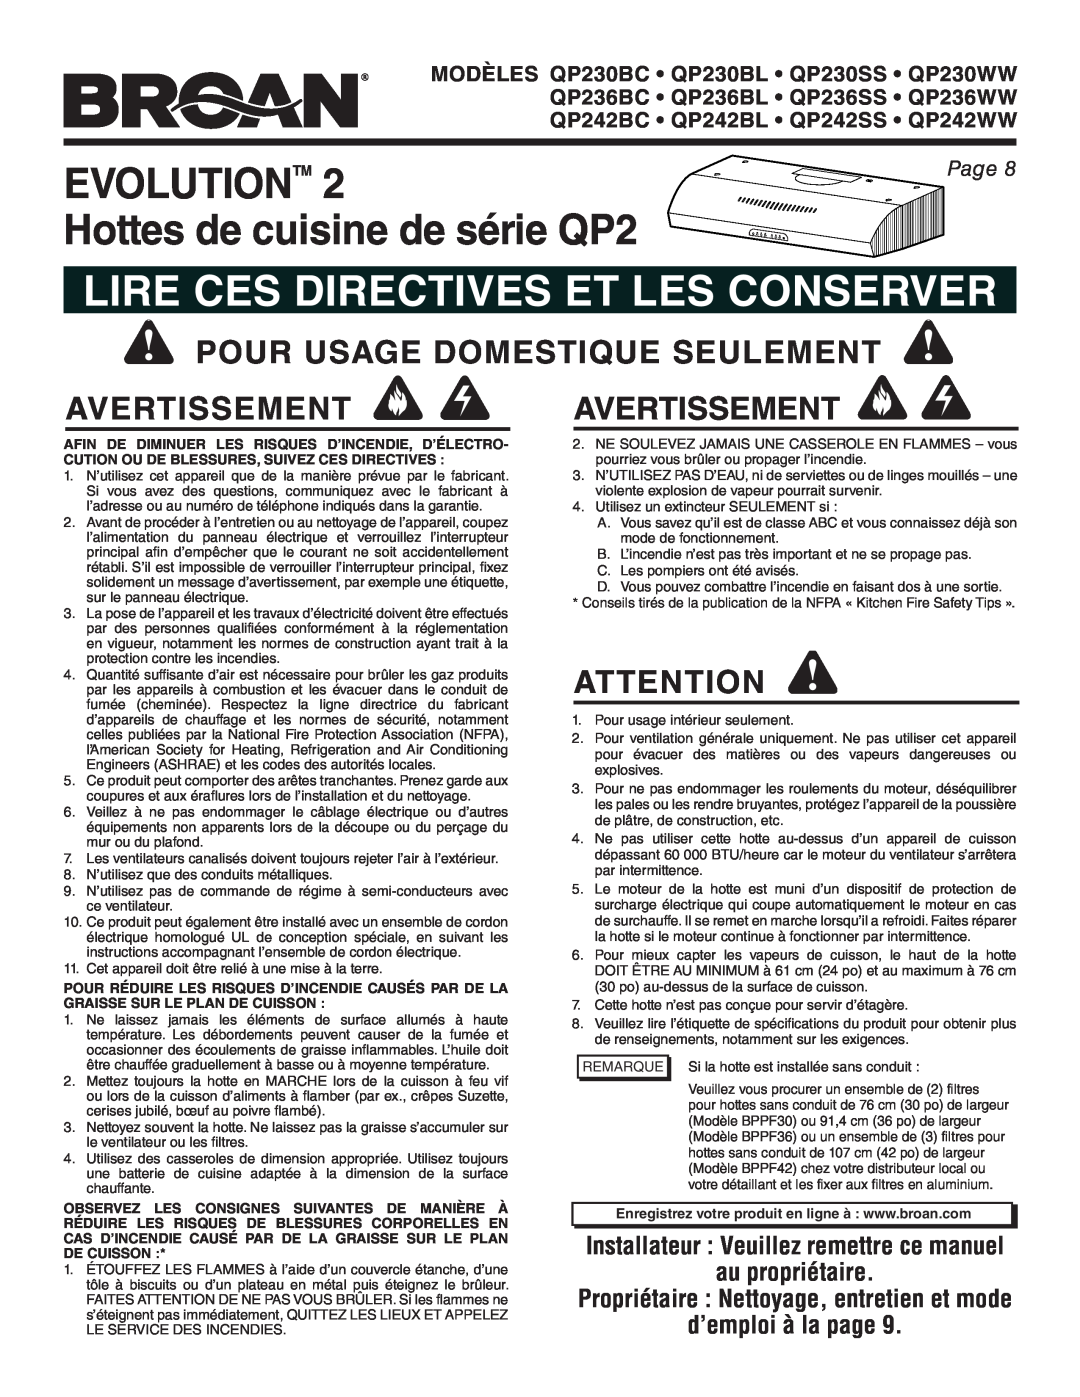 Broan QP236BL Evolutiontm, Hottes de cuisine de série QP2, Lire Ces Directives Et Les Conserver, au propriétaire, Page 